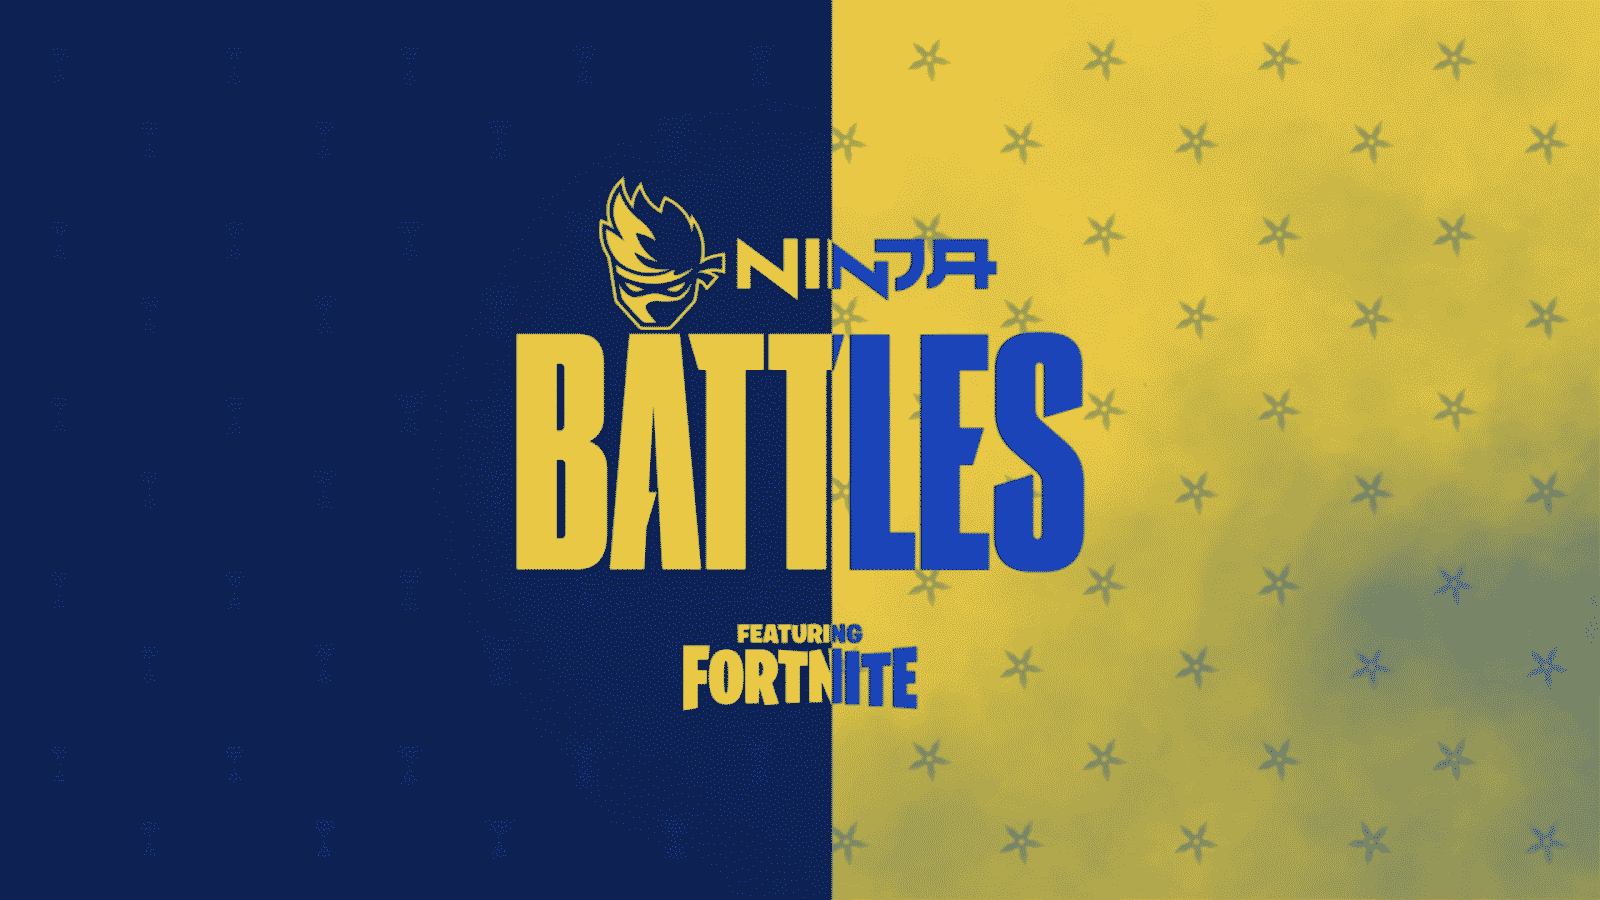 Fortnite Ninja Battles